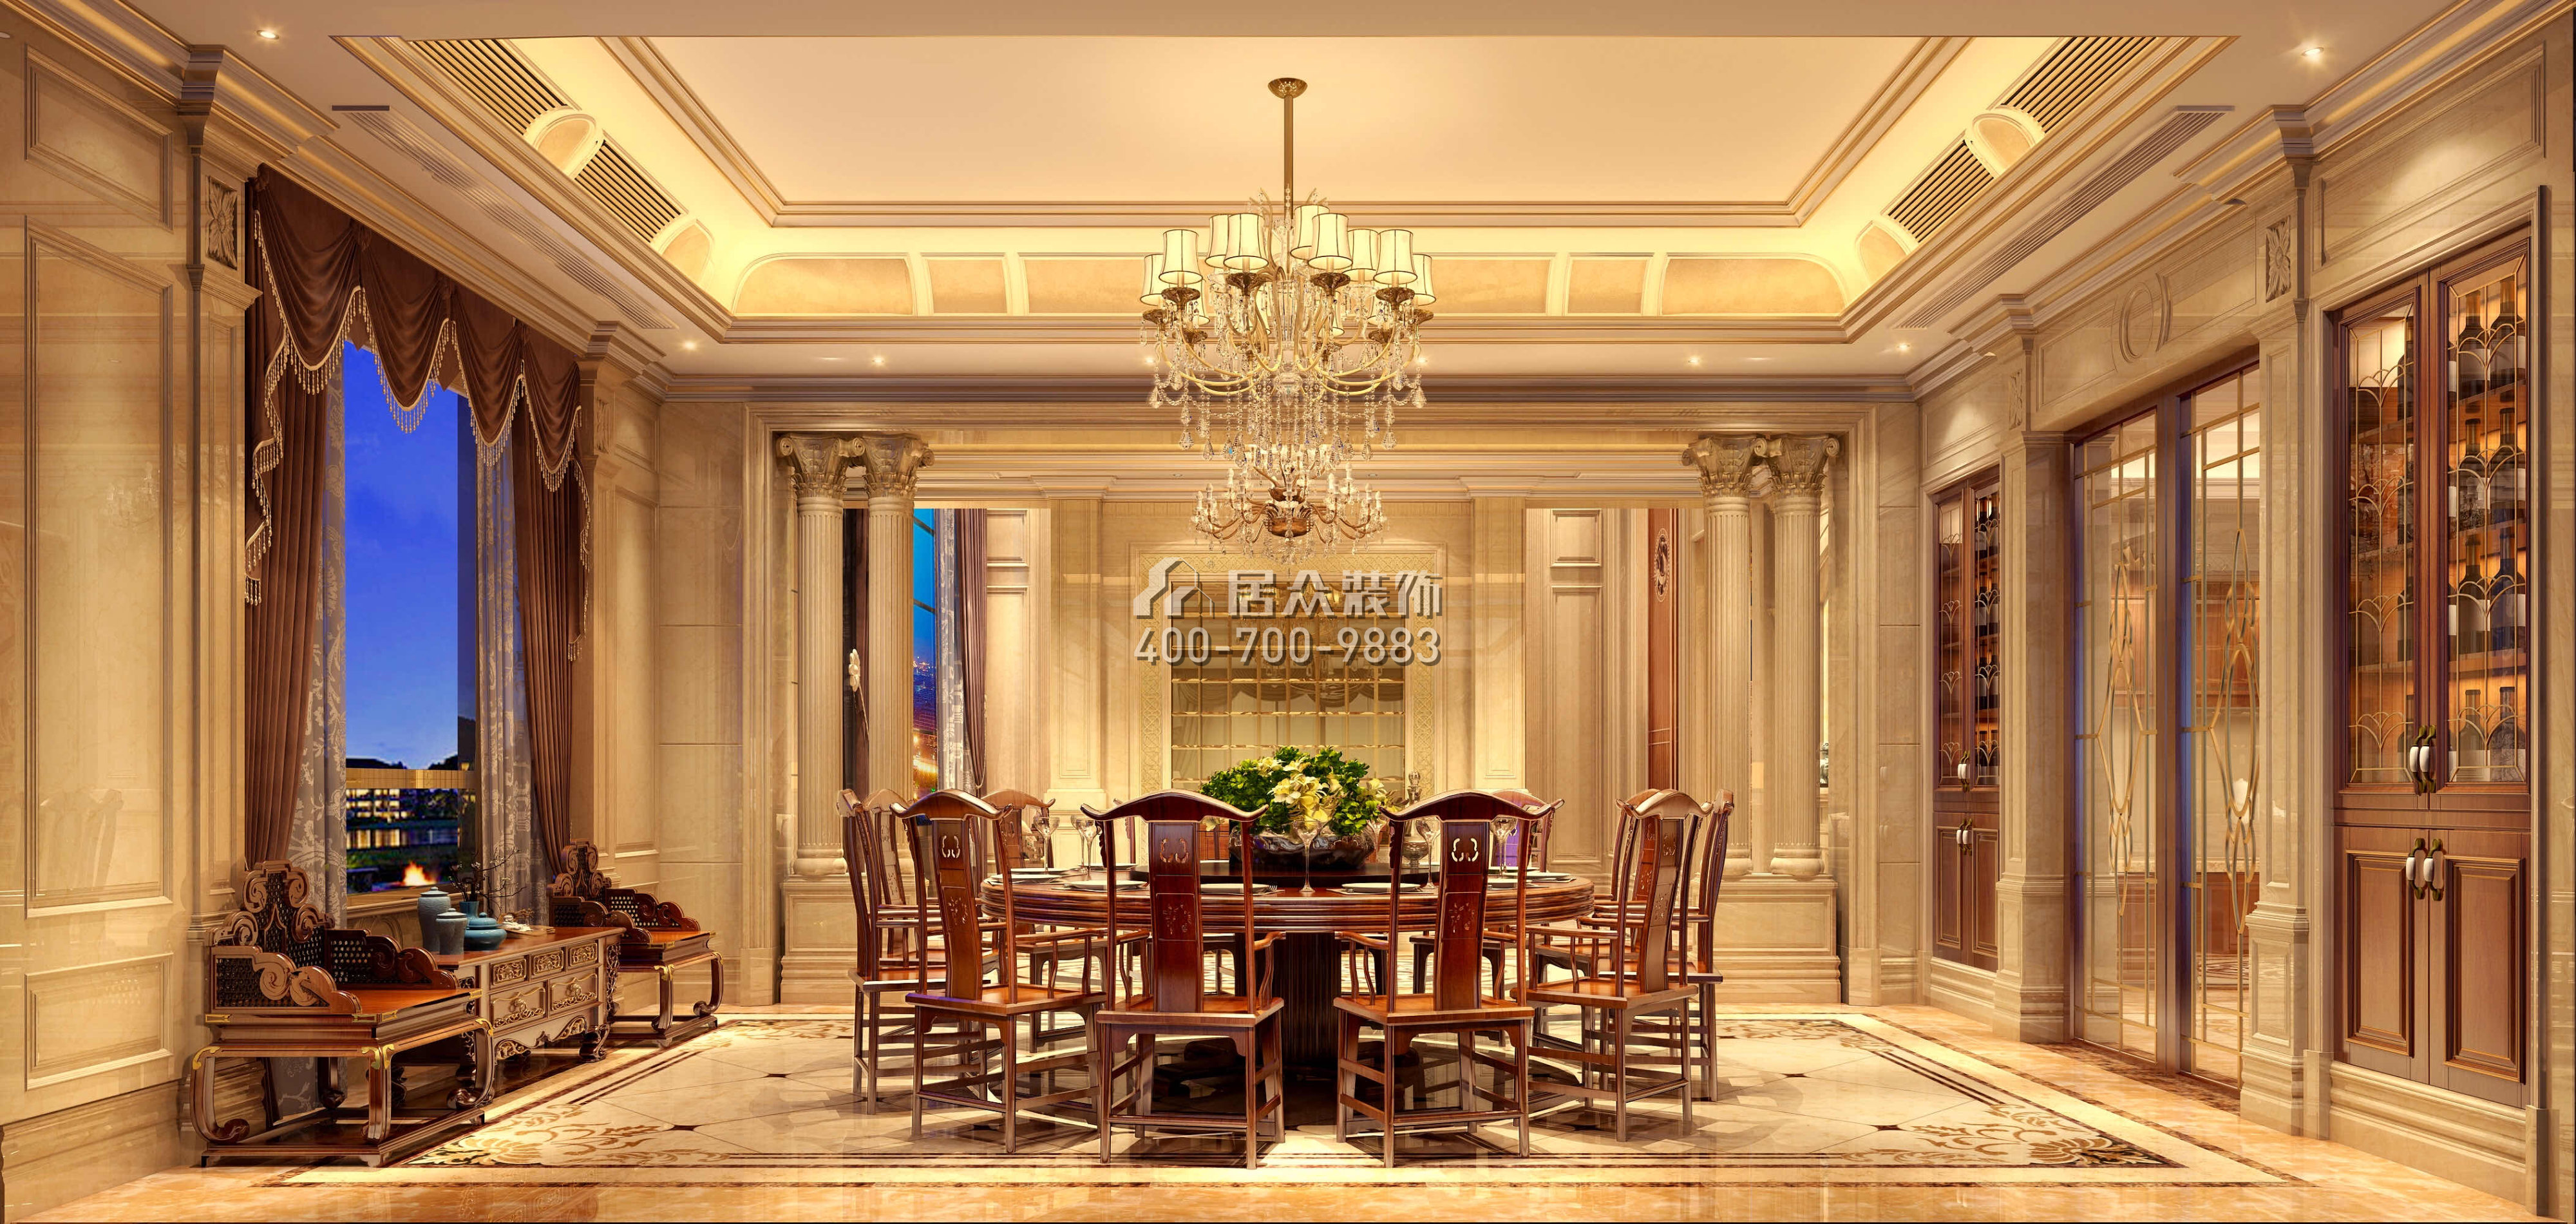 东江明珠花园600平方米欧式风格别墅户型餐厅装修效果图